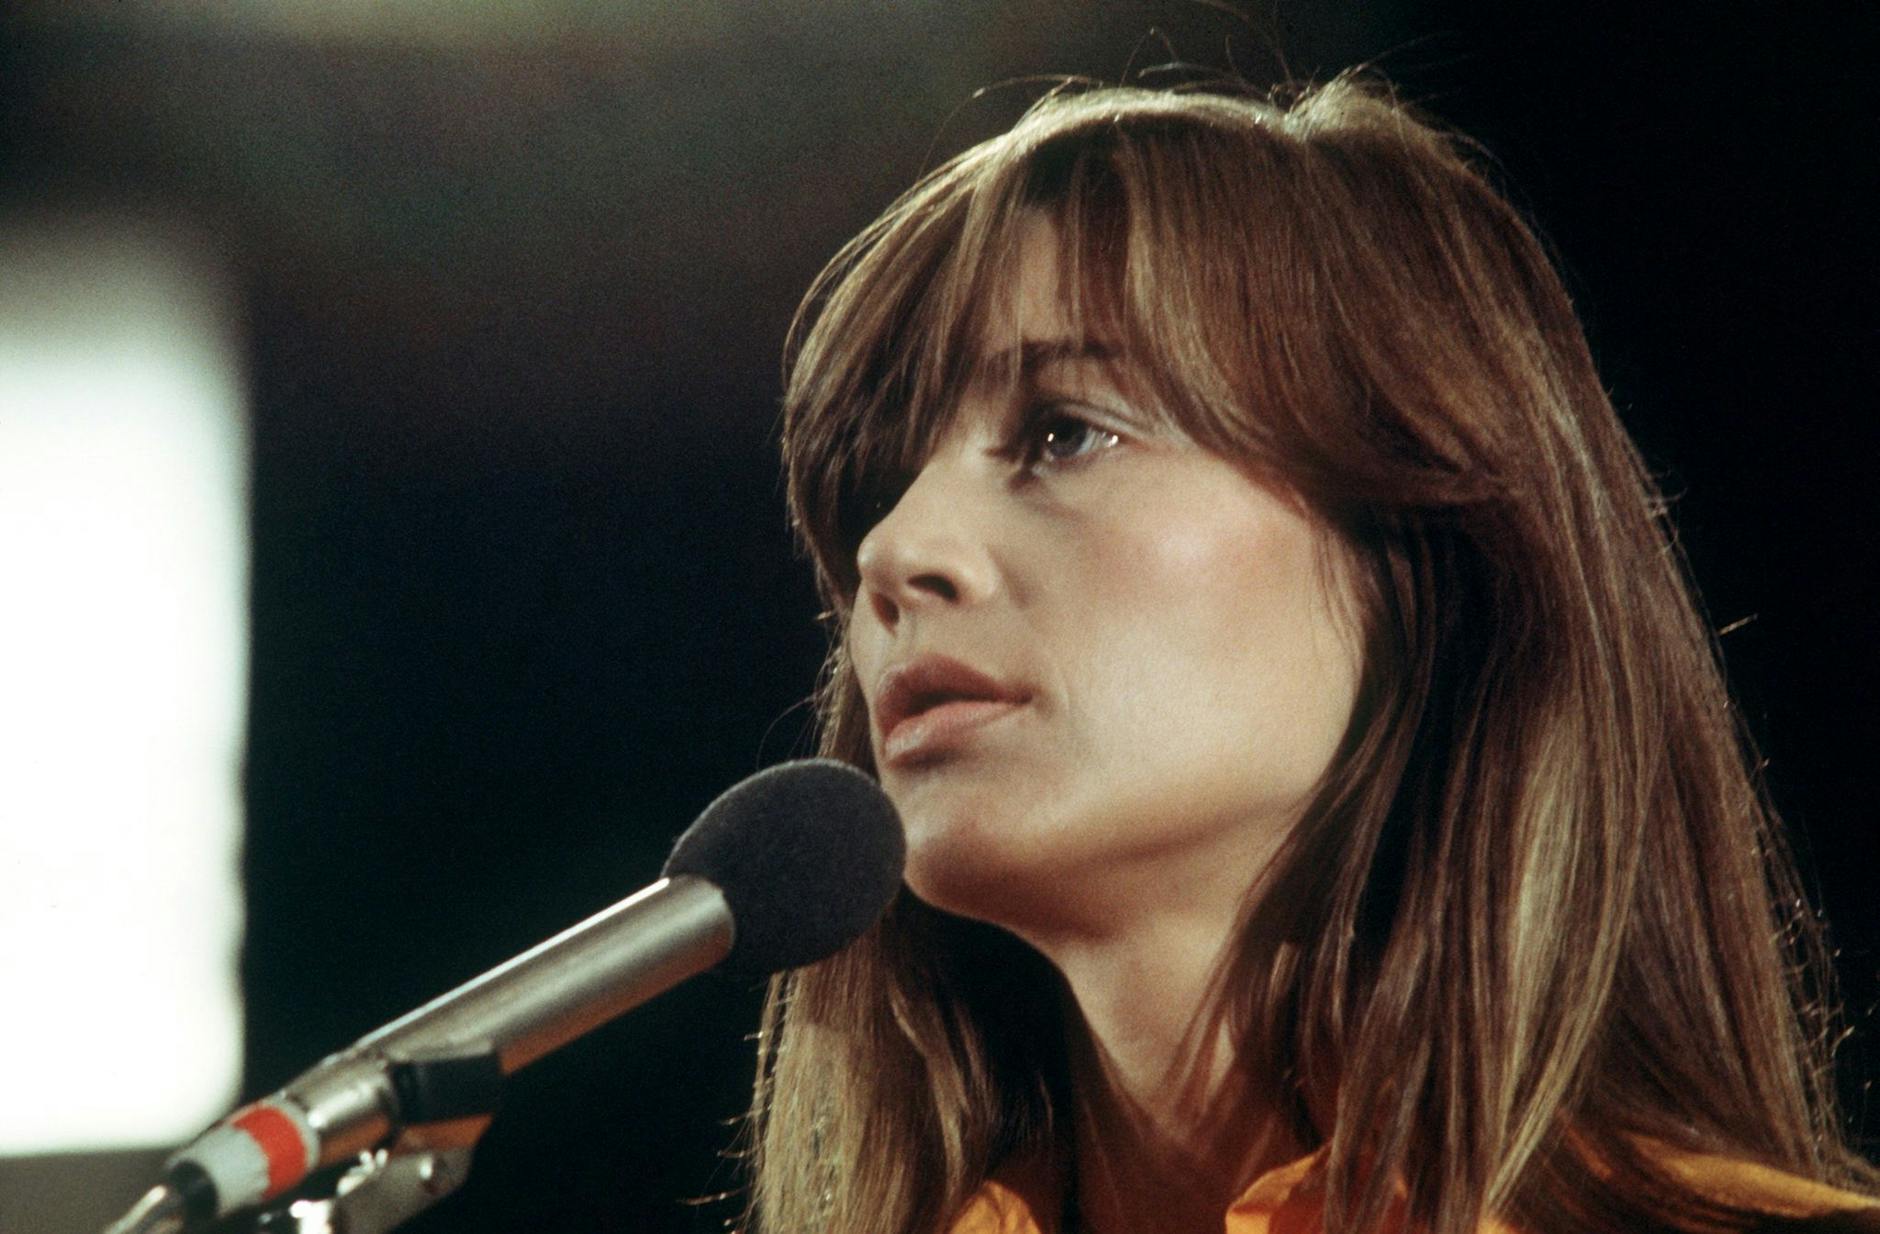 Die französische Sängerin Francoise Hardy bei einem Auftritt im September 1973 in der Musiksendung "Pop 73", die anlässlich der II. Internationalen Funkausstellung in der Berliner Philharmonie stattfand.